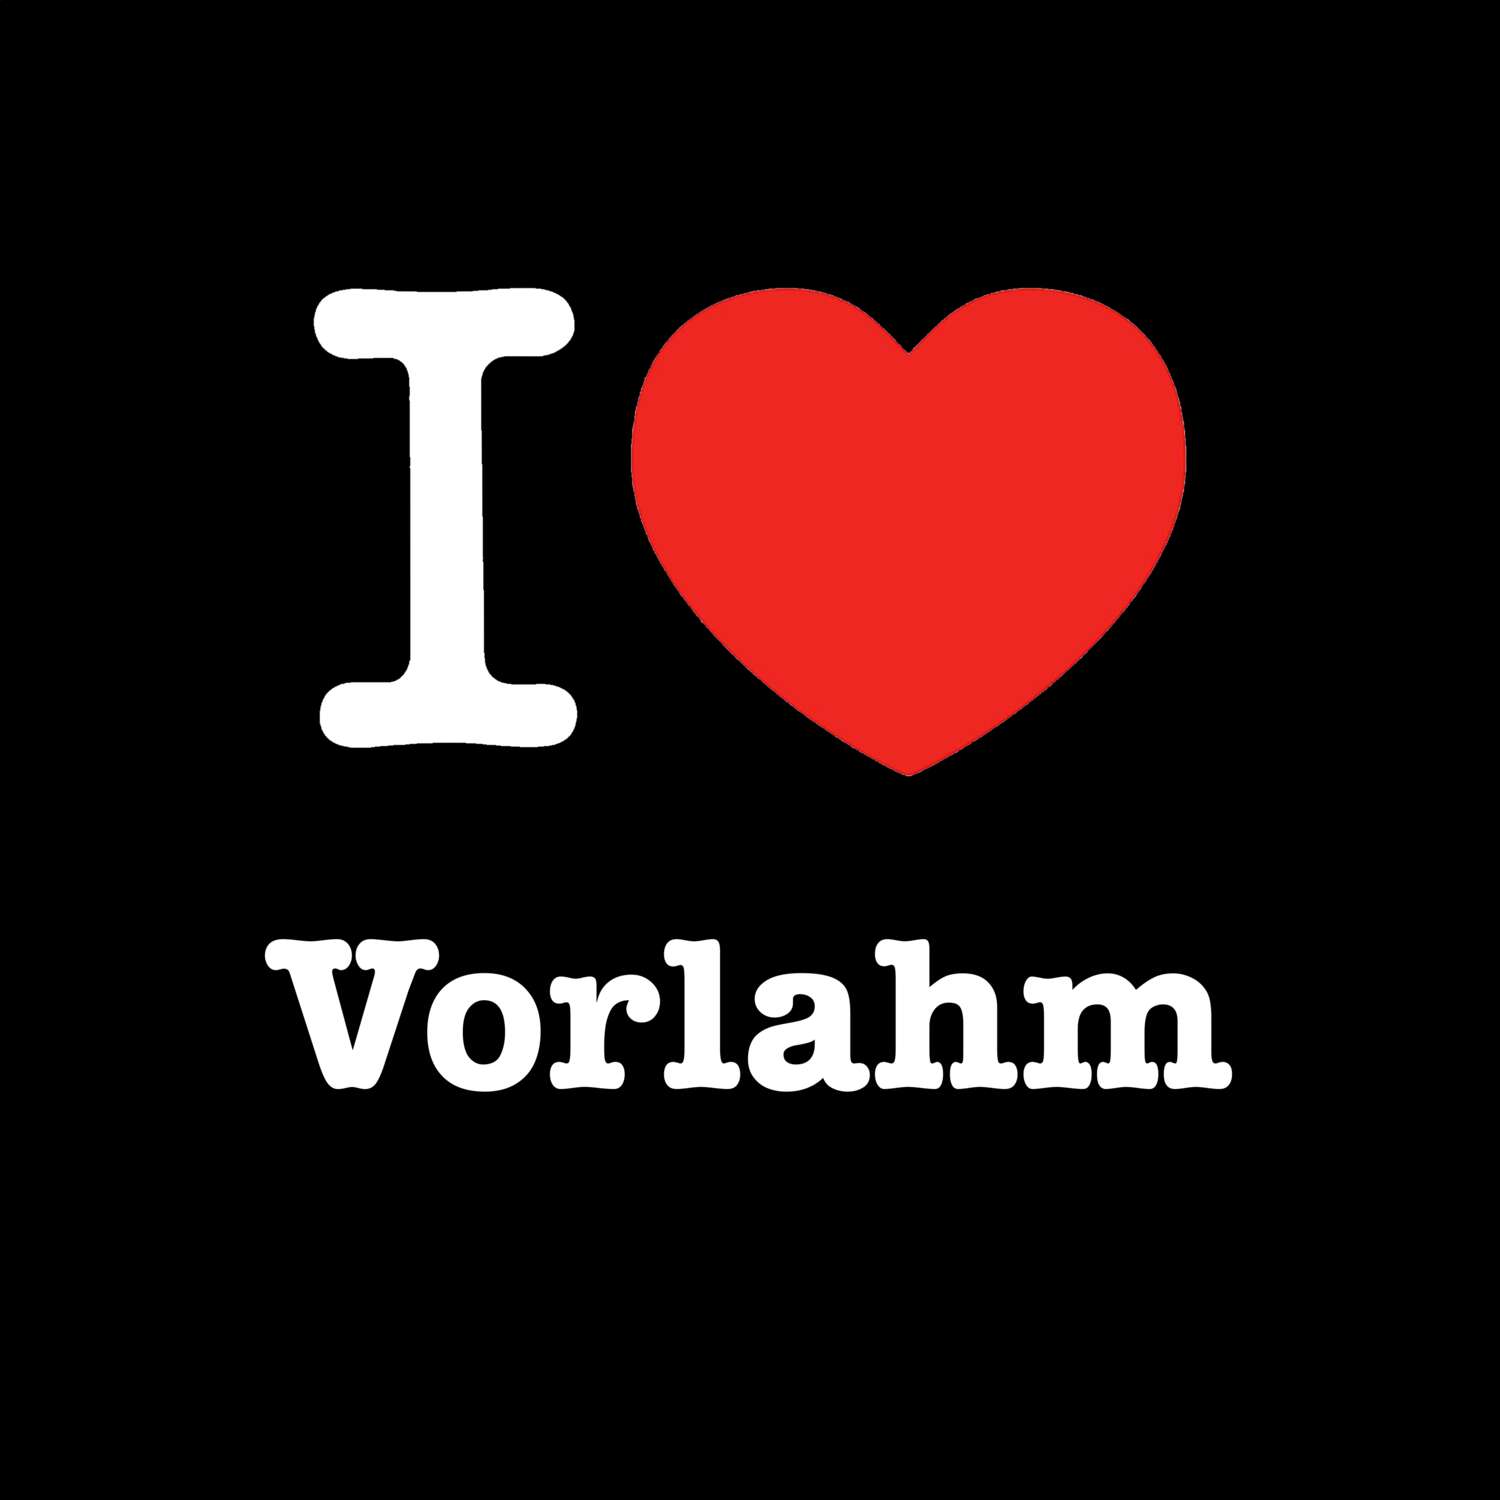 Vorlahm T-Shirt »I love«